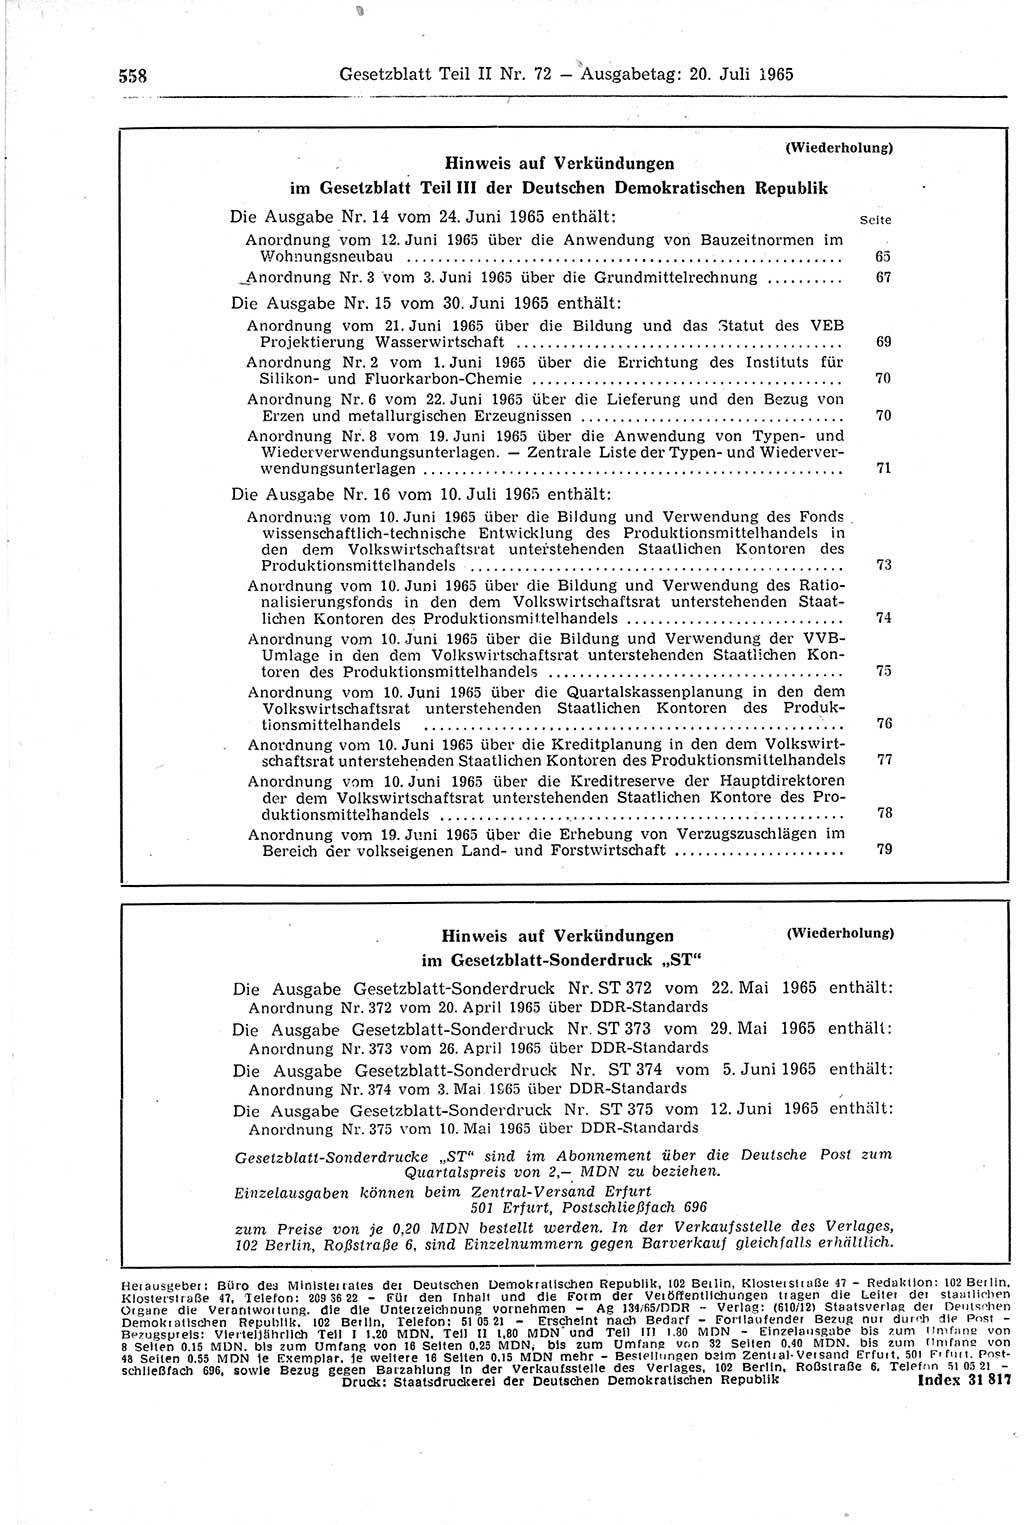 Gesetzblatt (GBl.) der Deutschen Demokratischen Republik (DDR) Teil ⅠⅠ 1965, Seite 558 (GBl. DDR ⅠⅠ 1965, S. 558)